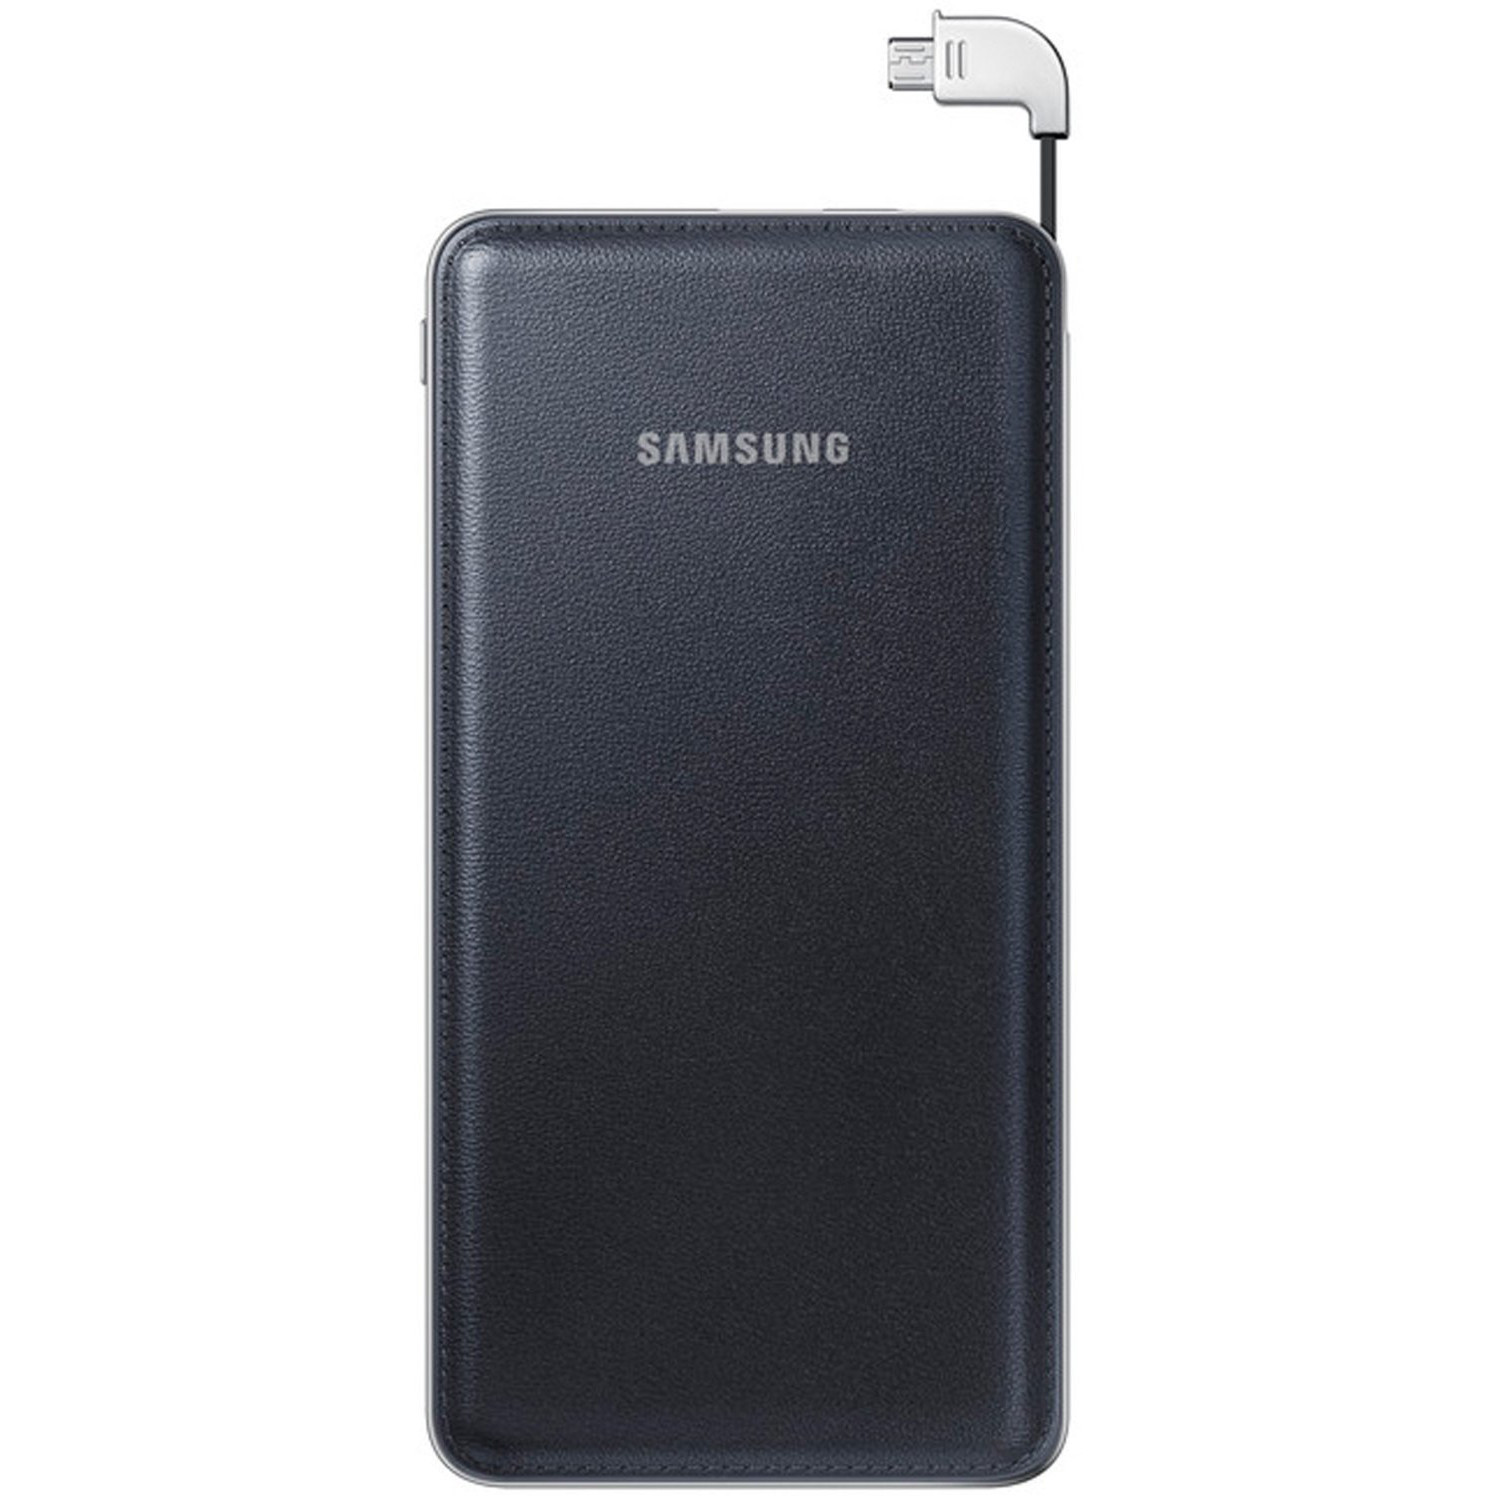  Acumulator extern Samsung Battery Pack, 9500 mAh, Negru 